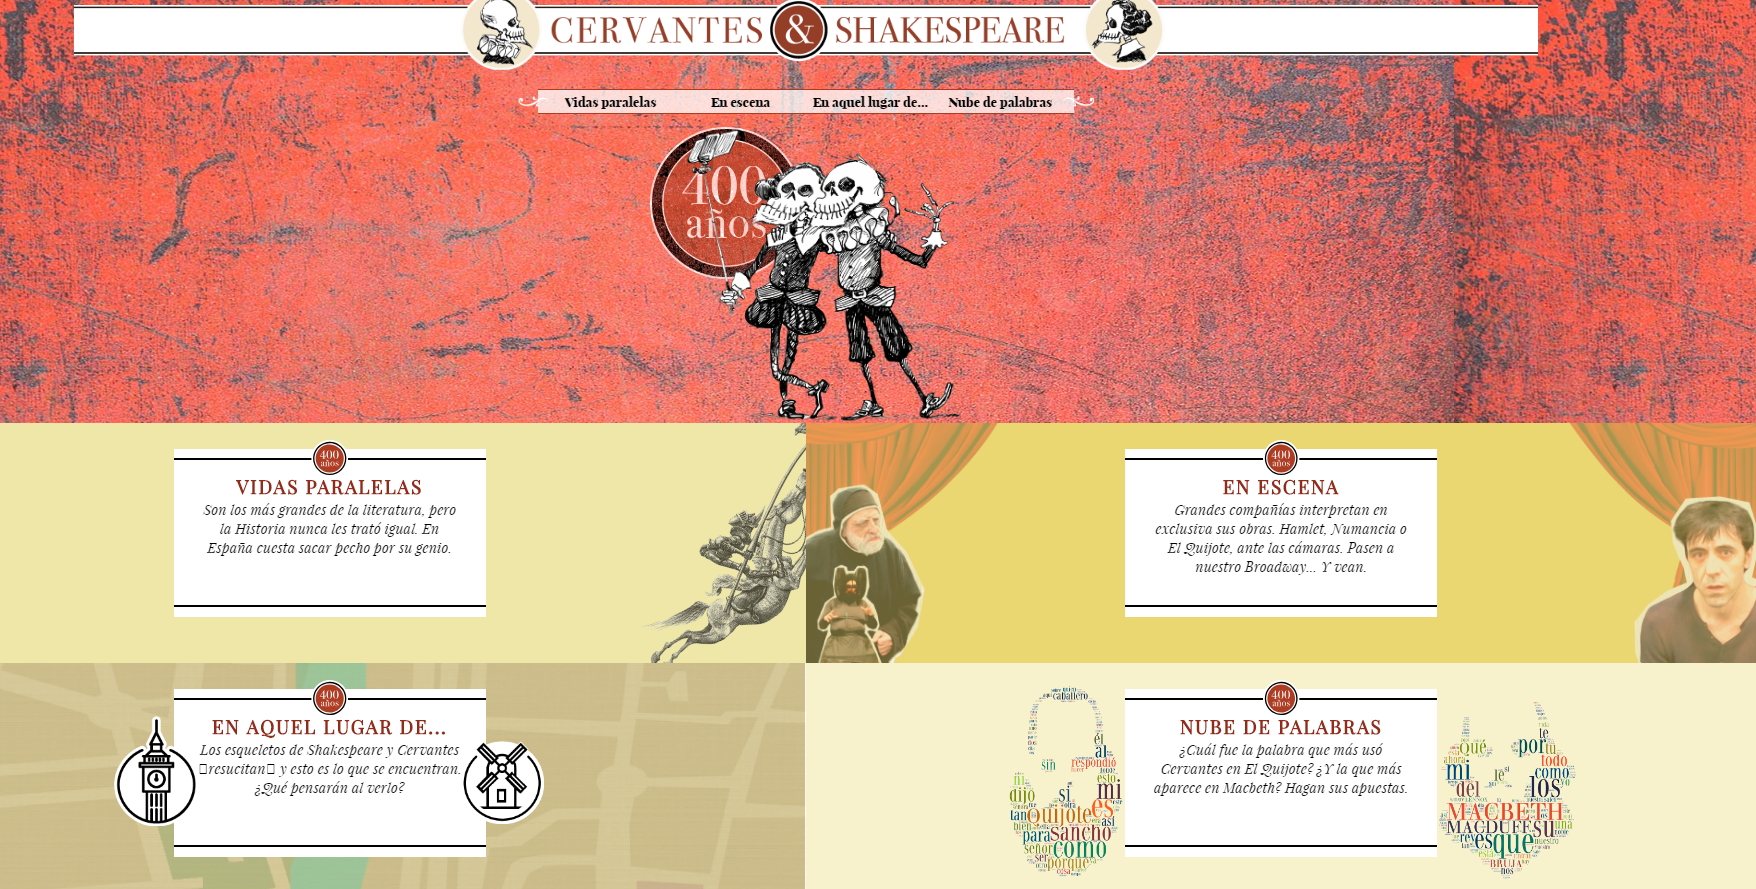  Cervantes & Shakespeare. Especial de Elmundo